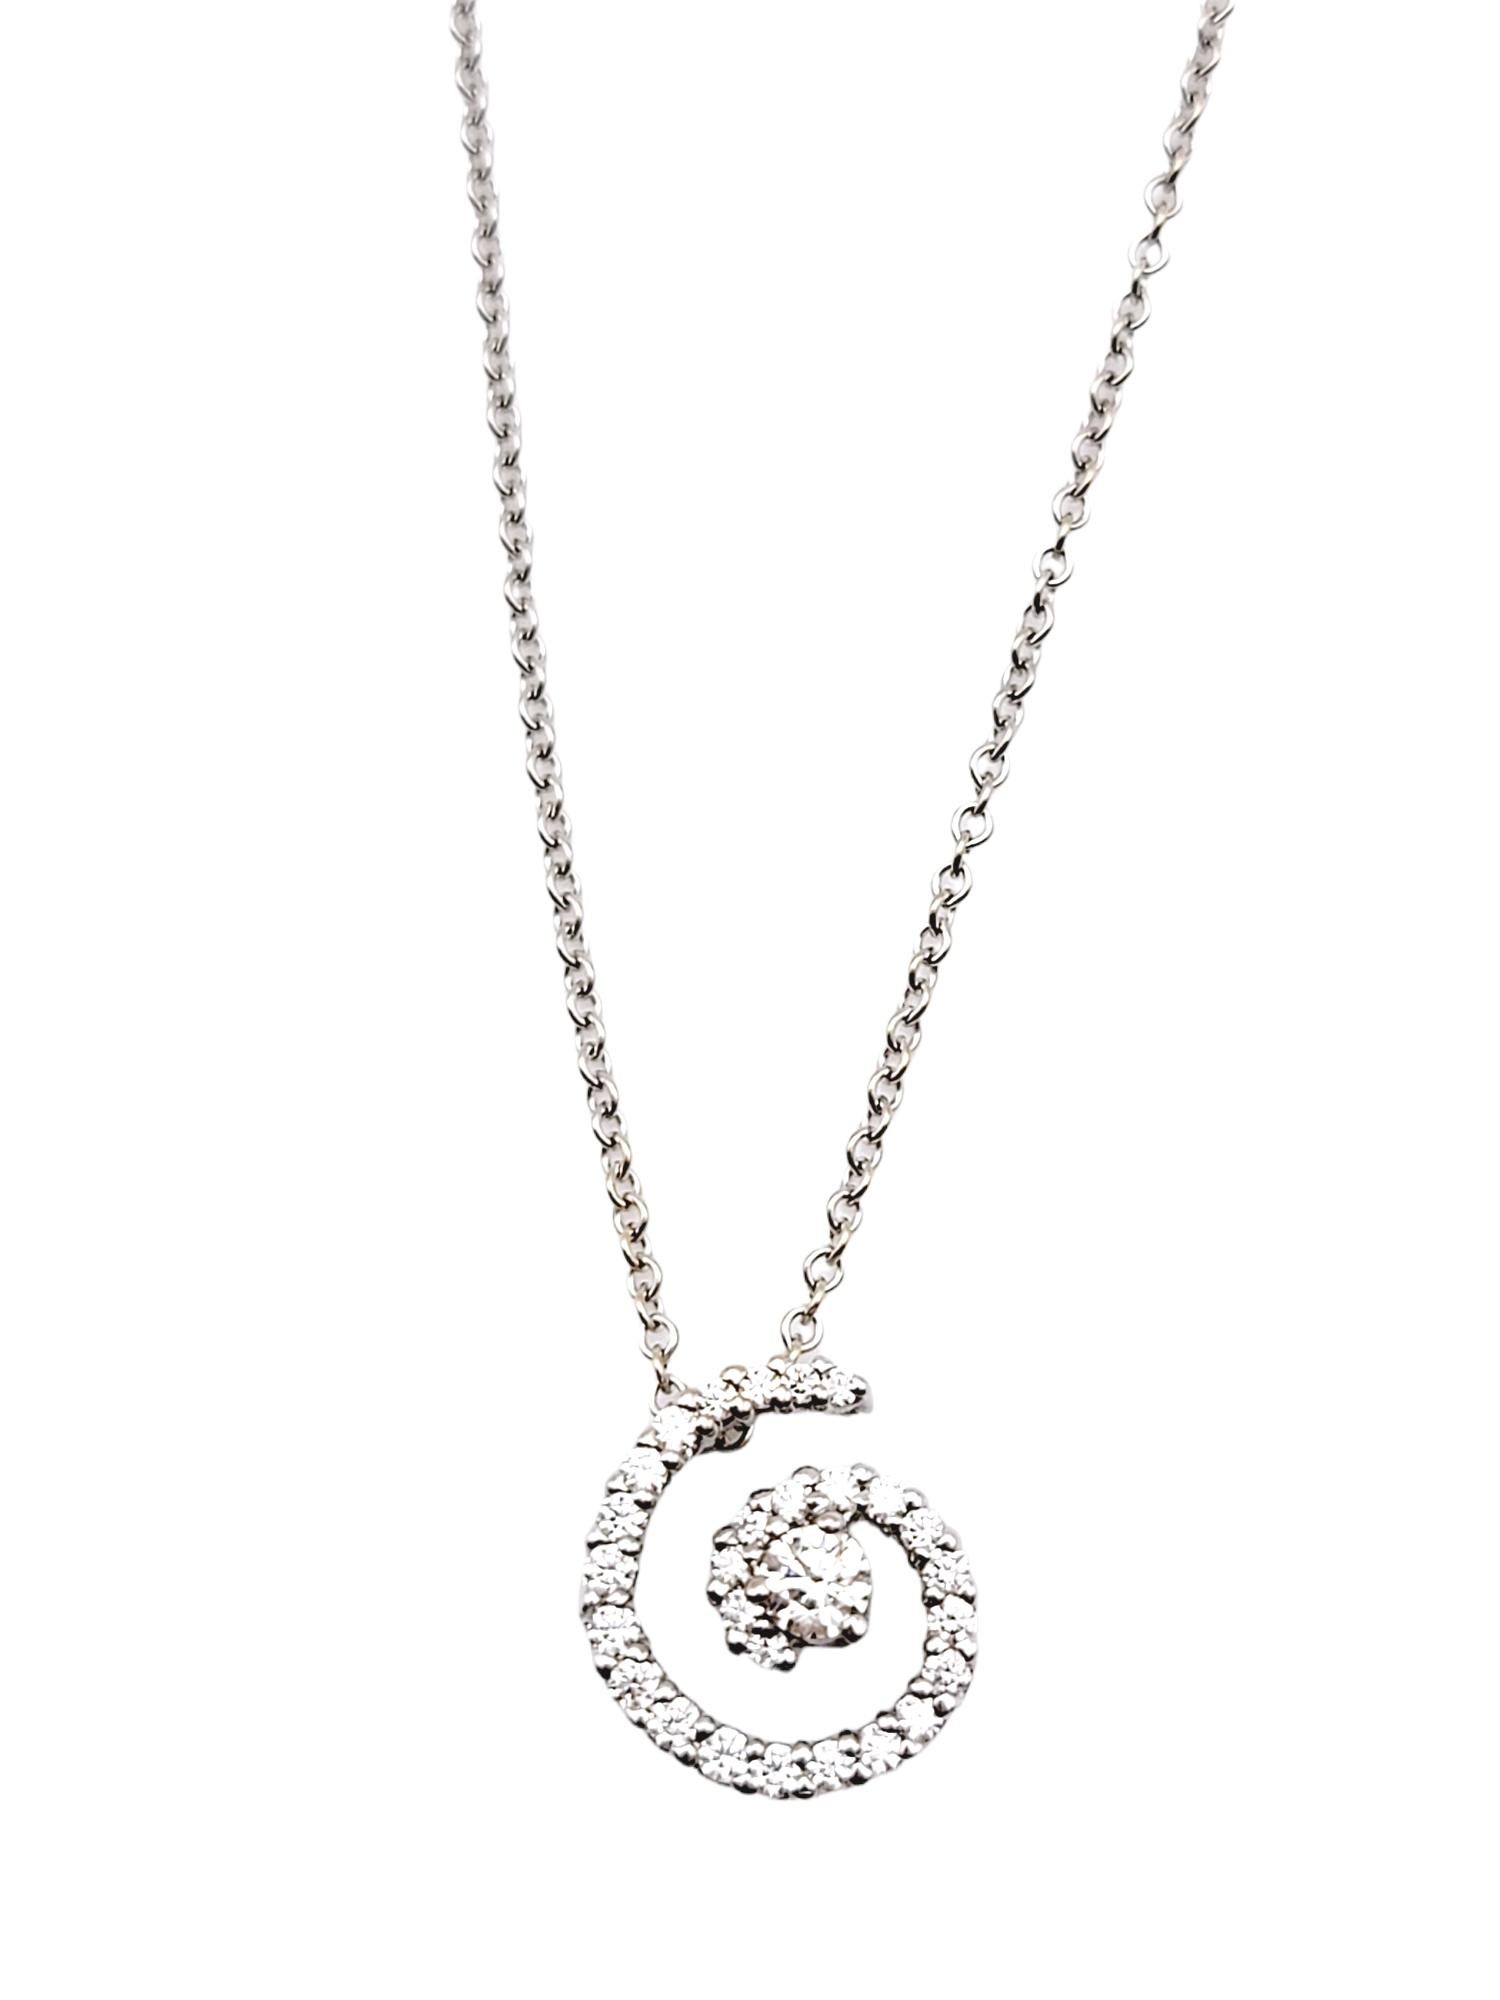 Ce collier pendentif en diamant moderne et scintillant est à la fois simple et chic. La chaîne délicate et la spirale glacée de diamants ronds naturels s'accordent avec à peu près tout. La luxueuse monture en or blanc 18 carats rehausse encore